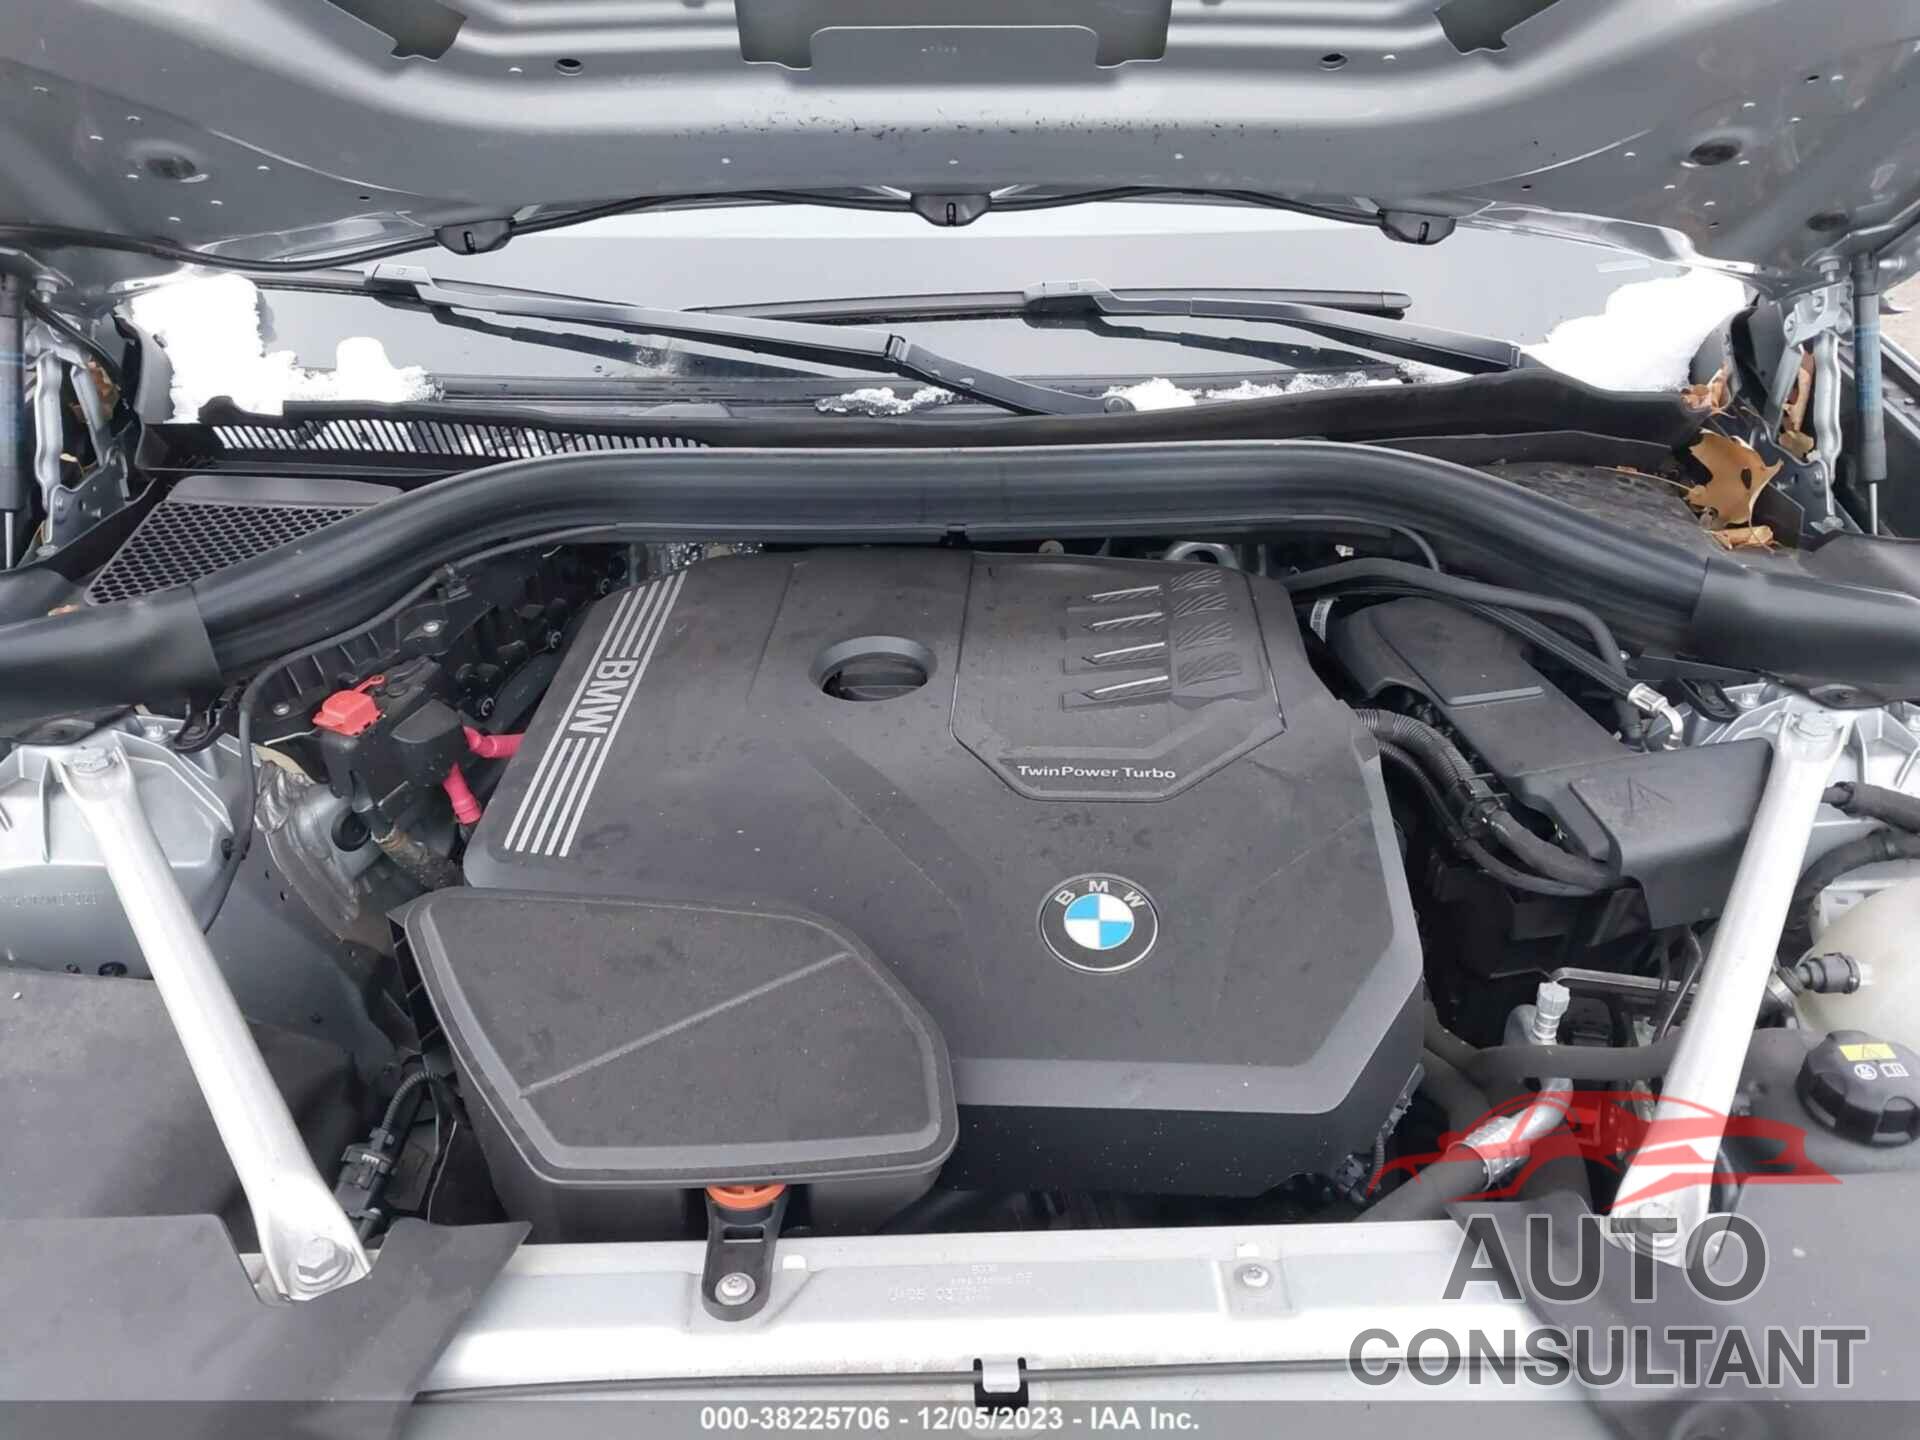 BMW X3 2021 - 5UXTY5C0XM9G95931